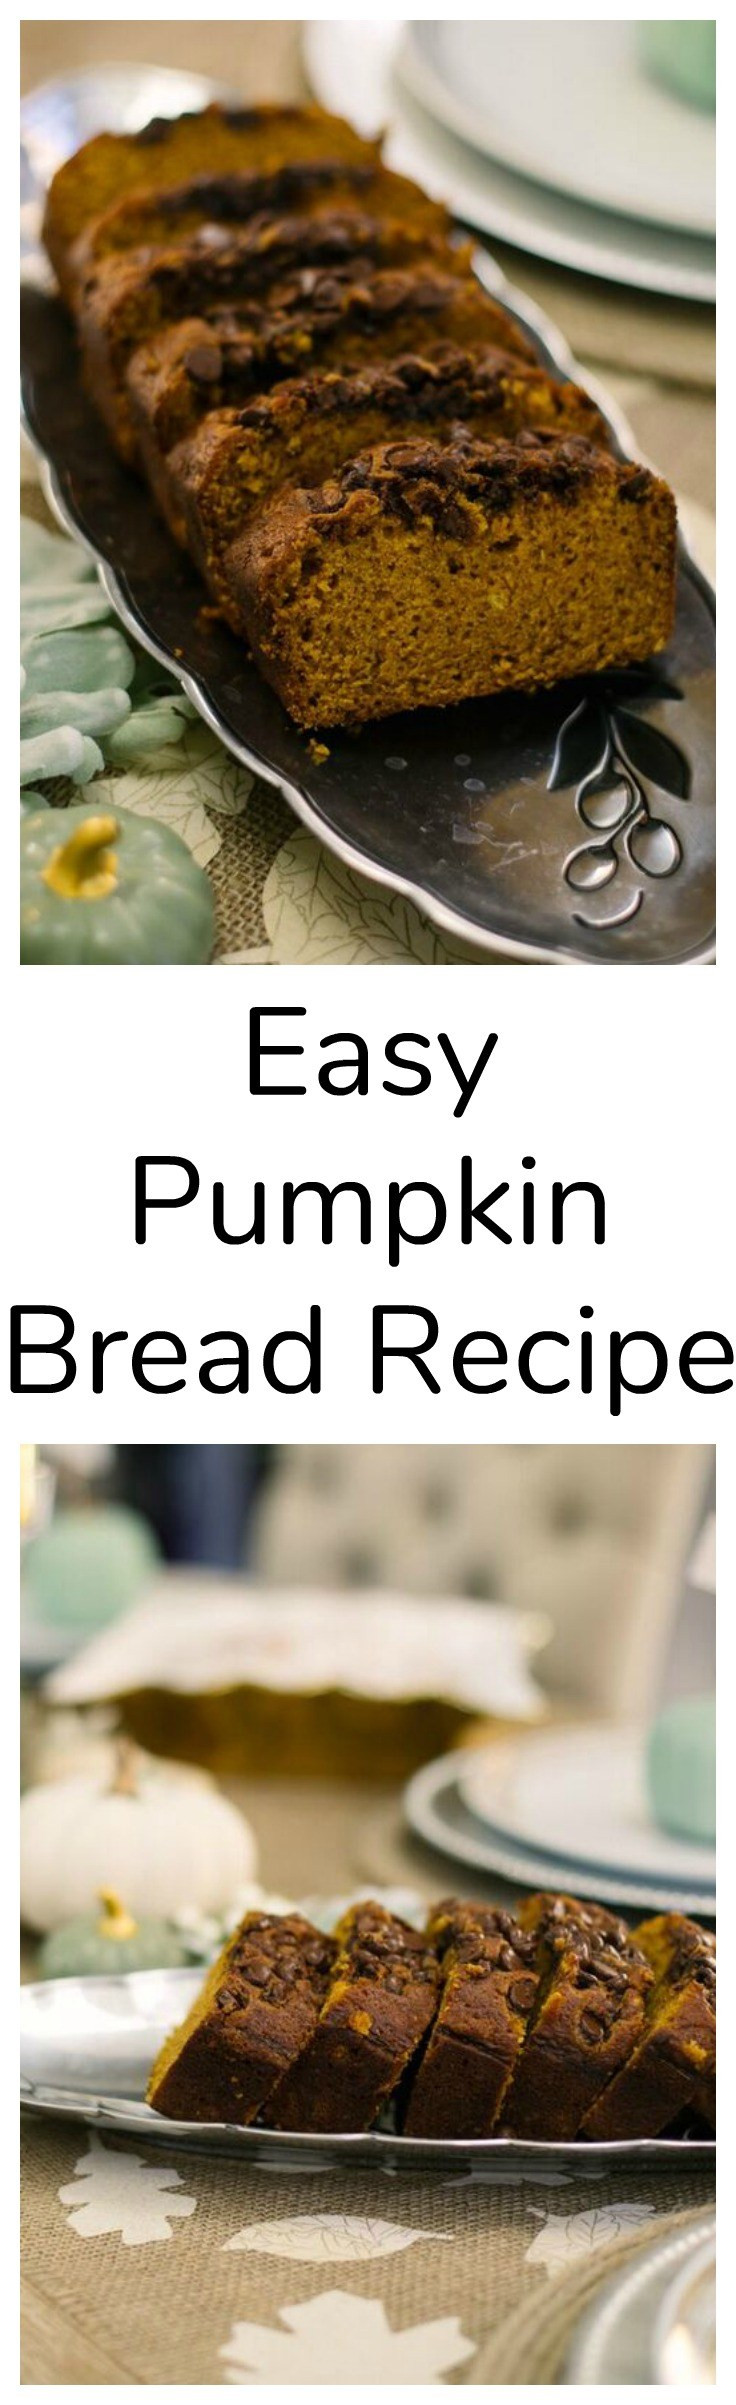 Easy Pumpkin Bread Recipe
 Pumpkin Bread Recipe Easy Million Ways To Mother